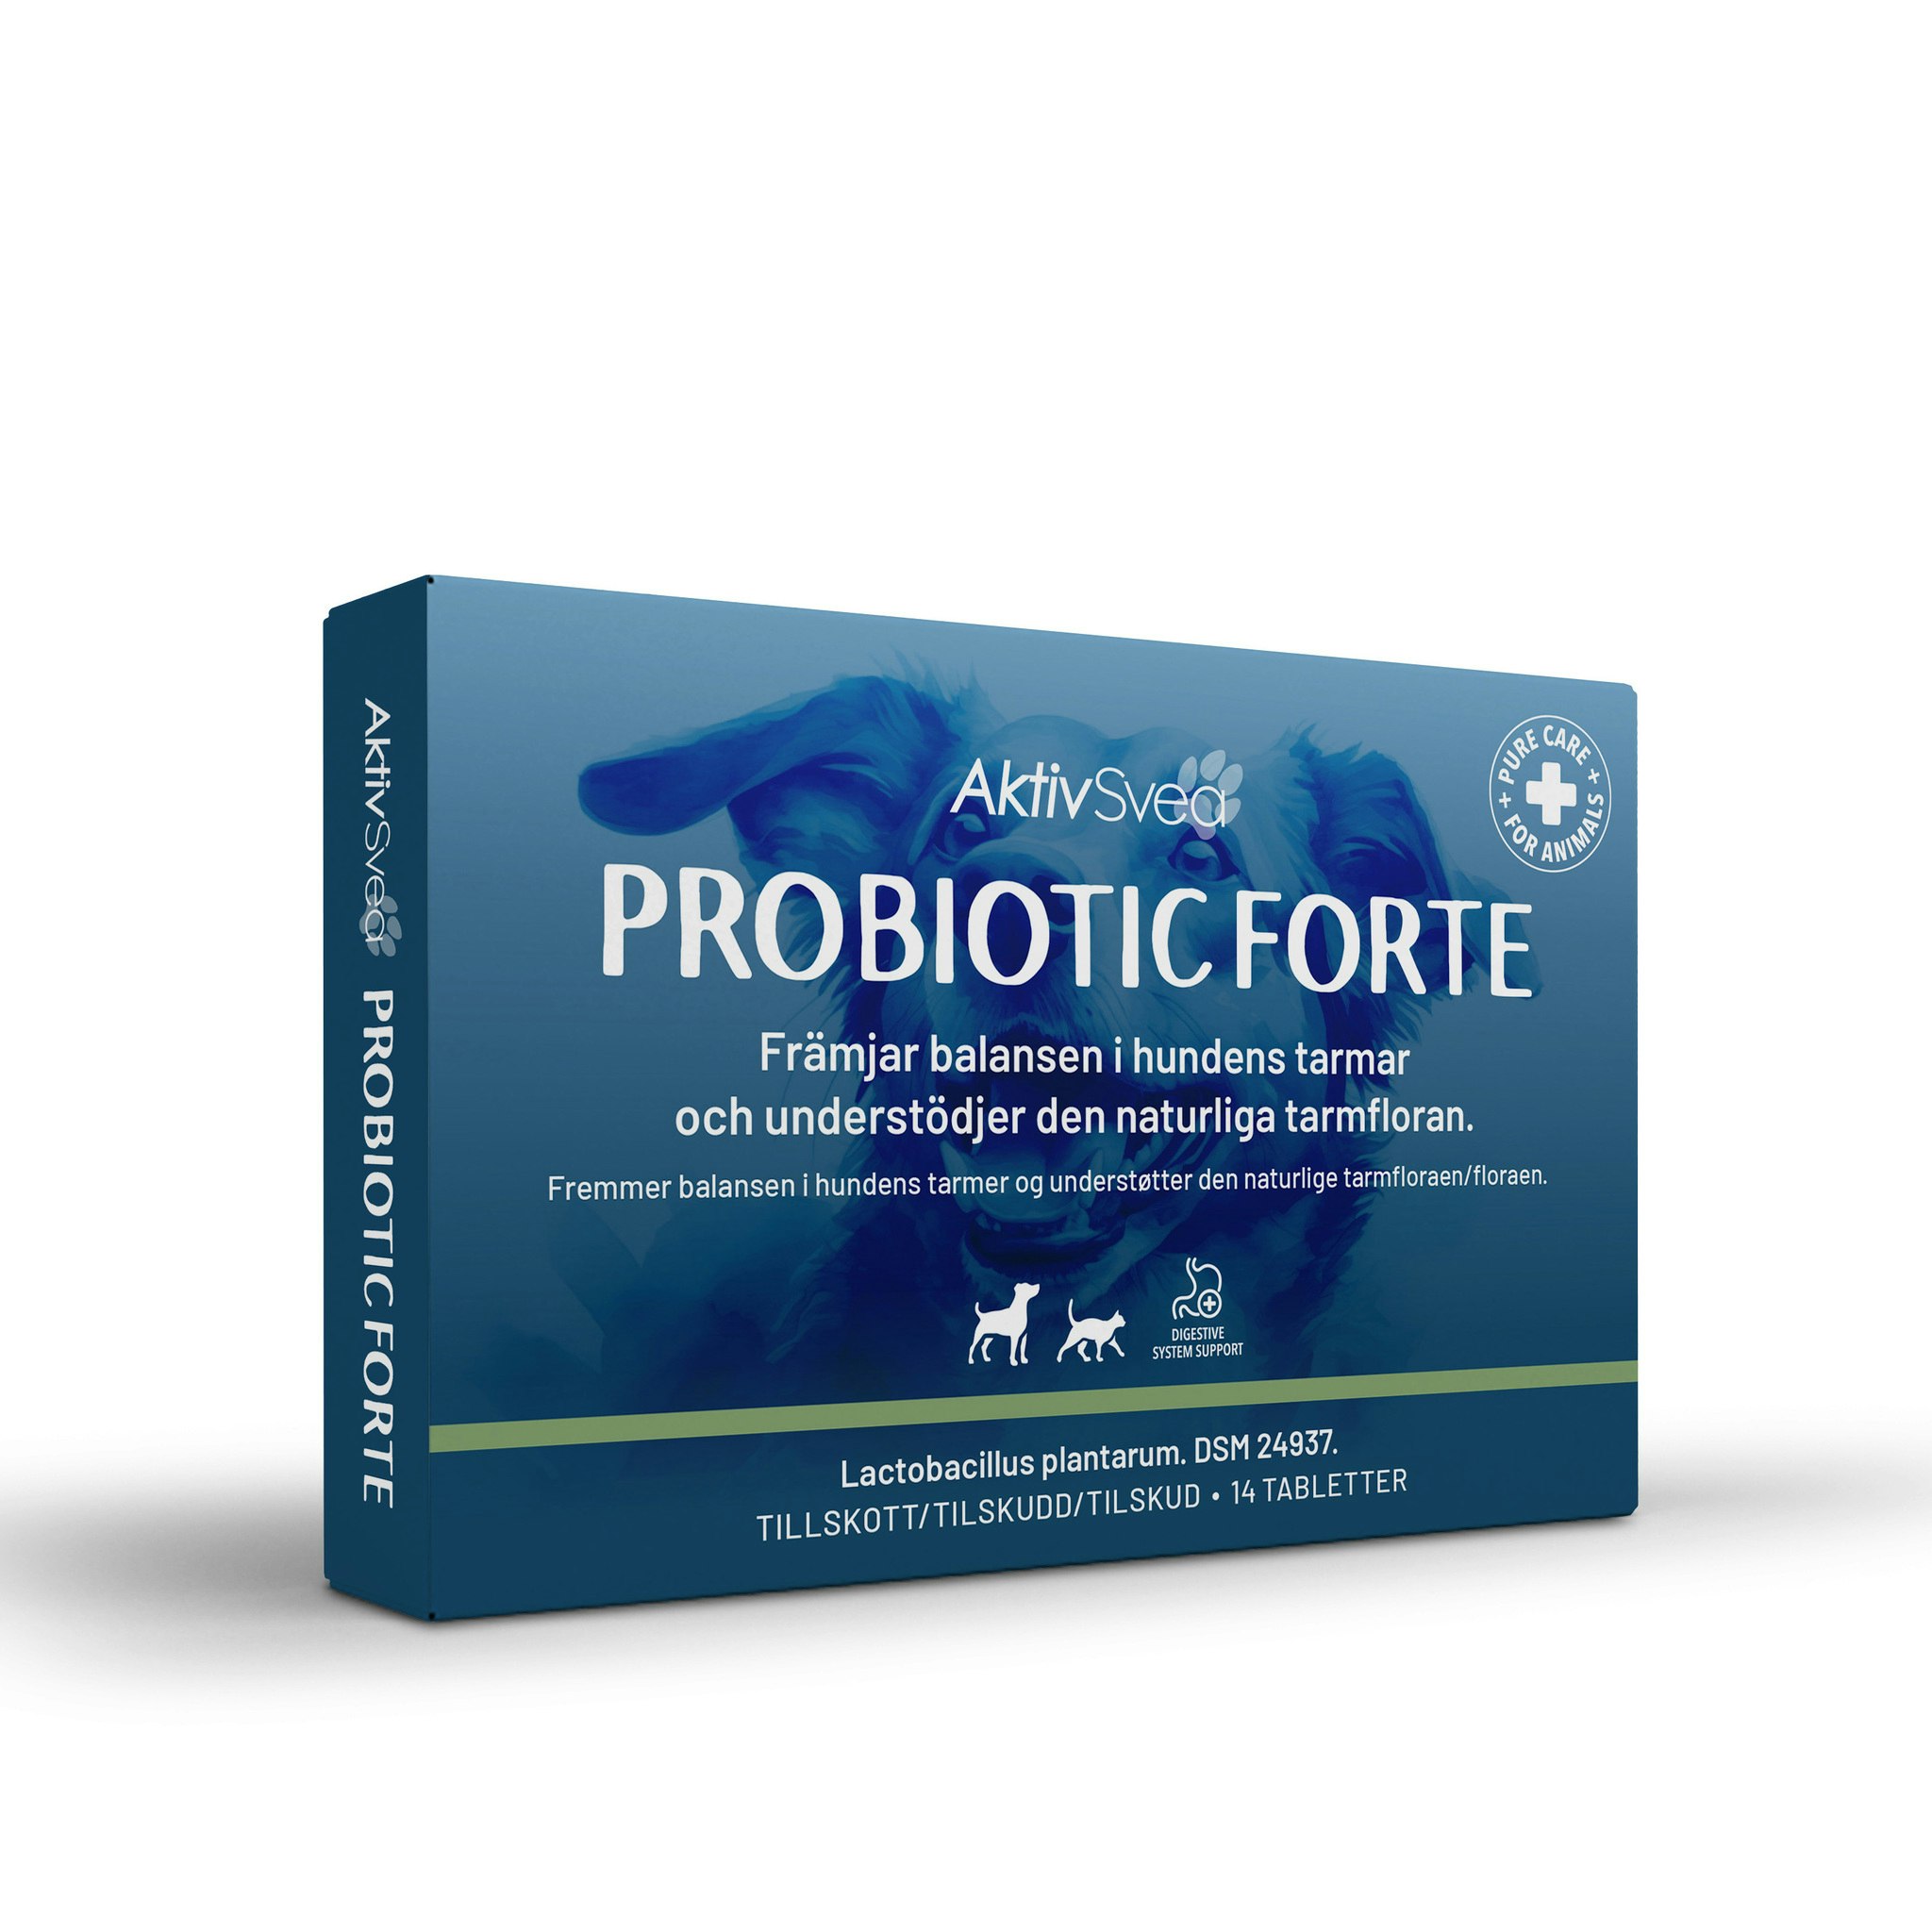 AktivSvea Probiotic forte 14 tabletter